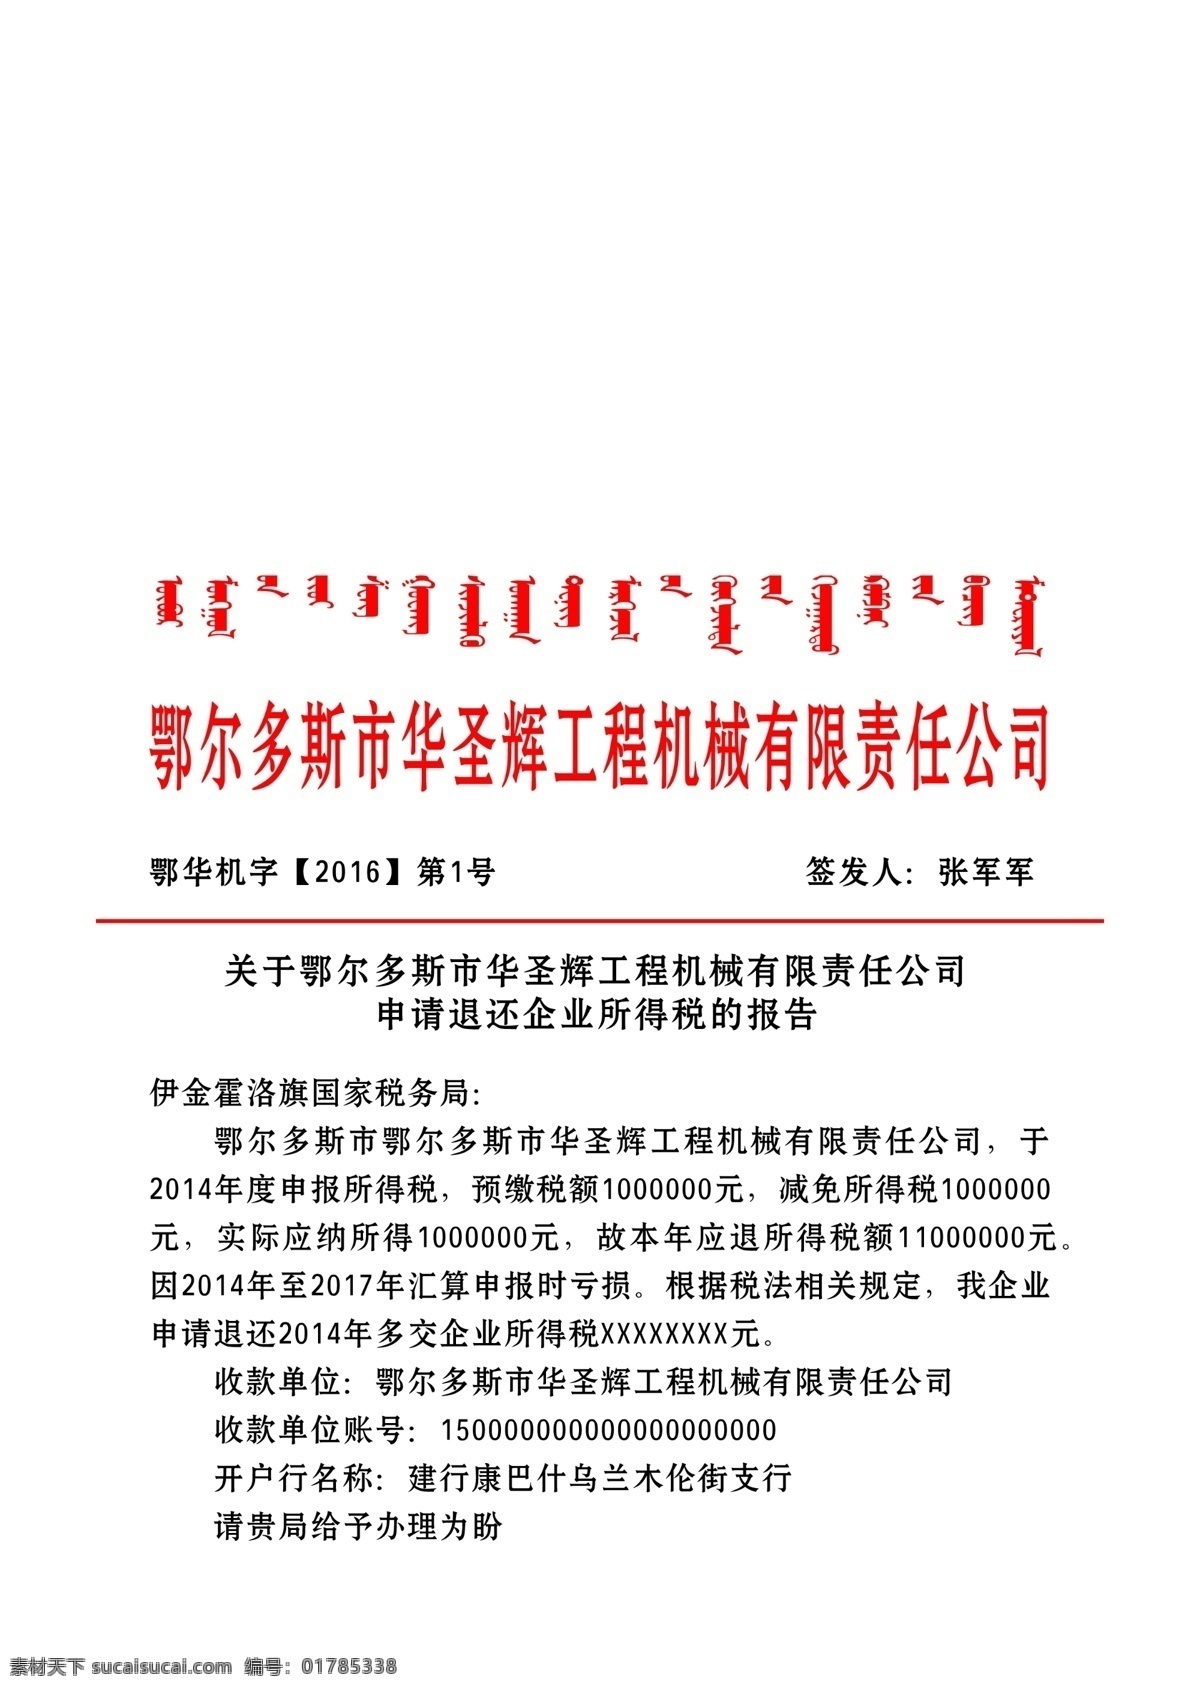 内蒙古 红头文件 内蒙红头文件 退税申请 蒙文 红头文件格式 展板模板